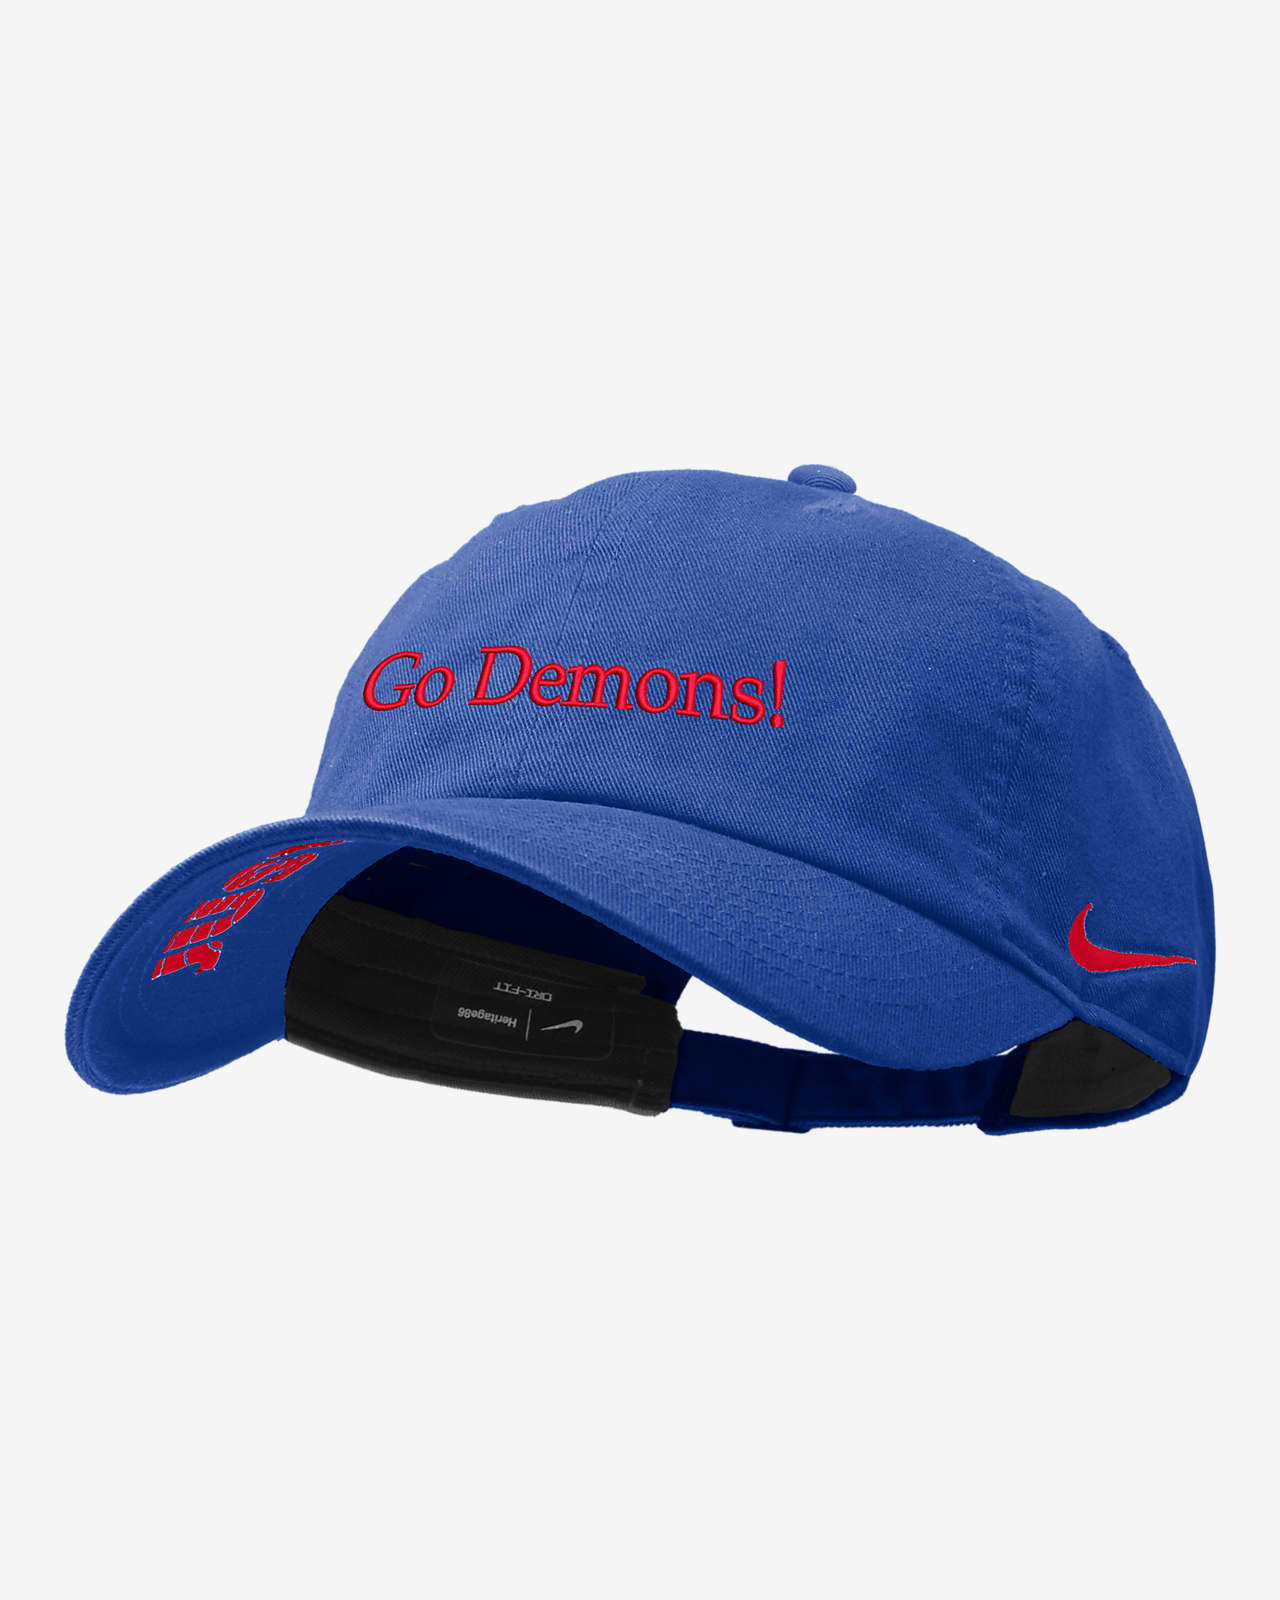 DePaul Nike College Cap